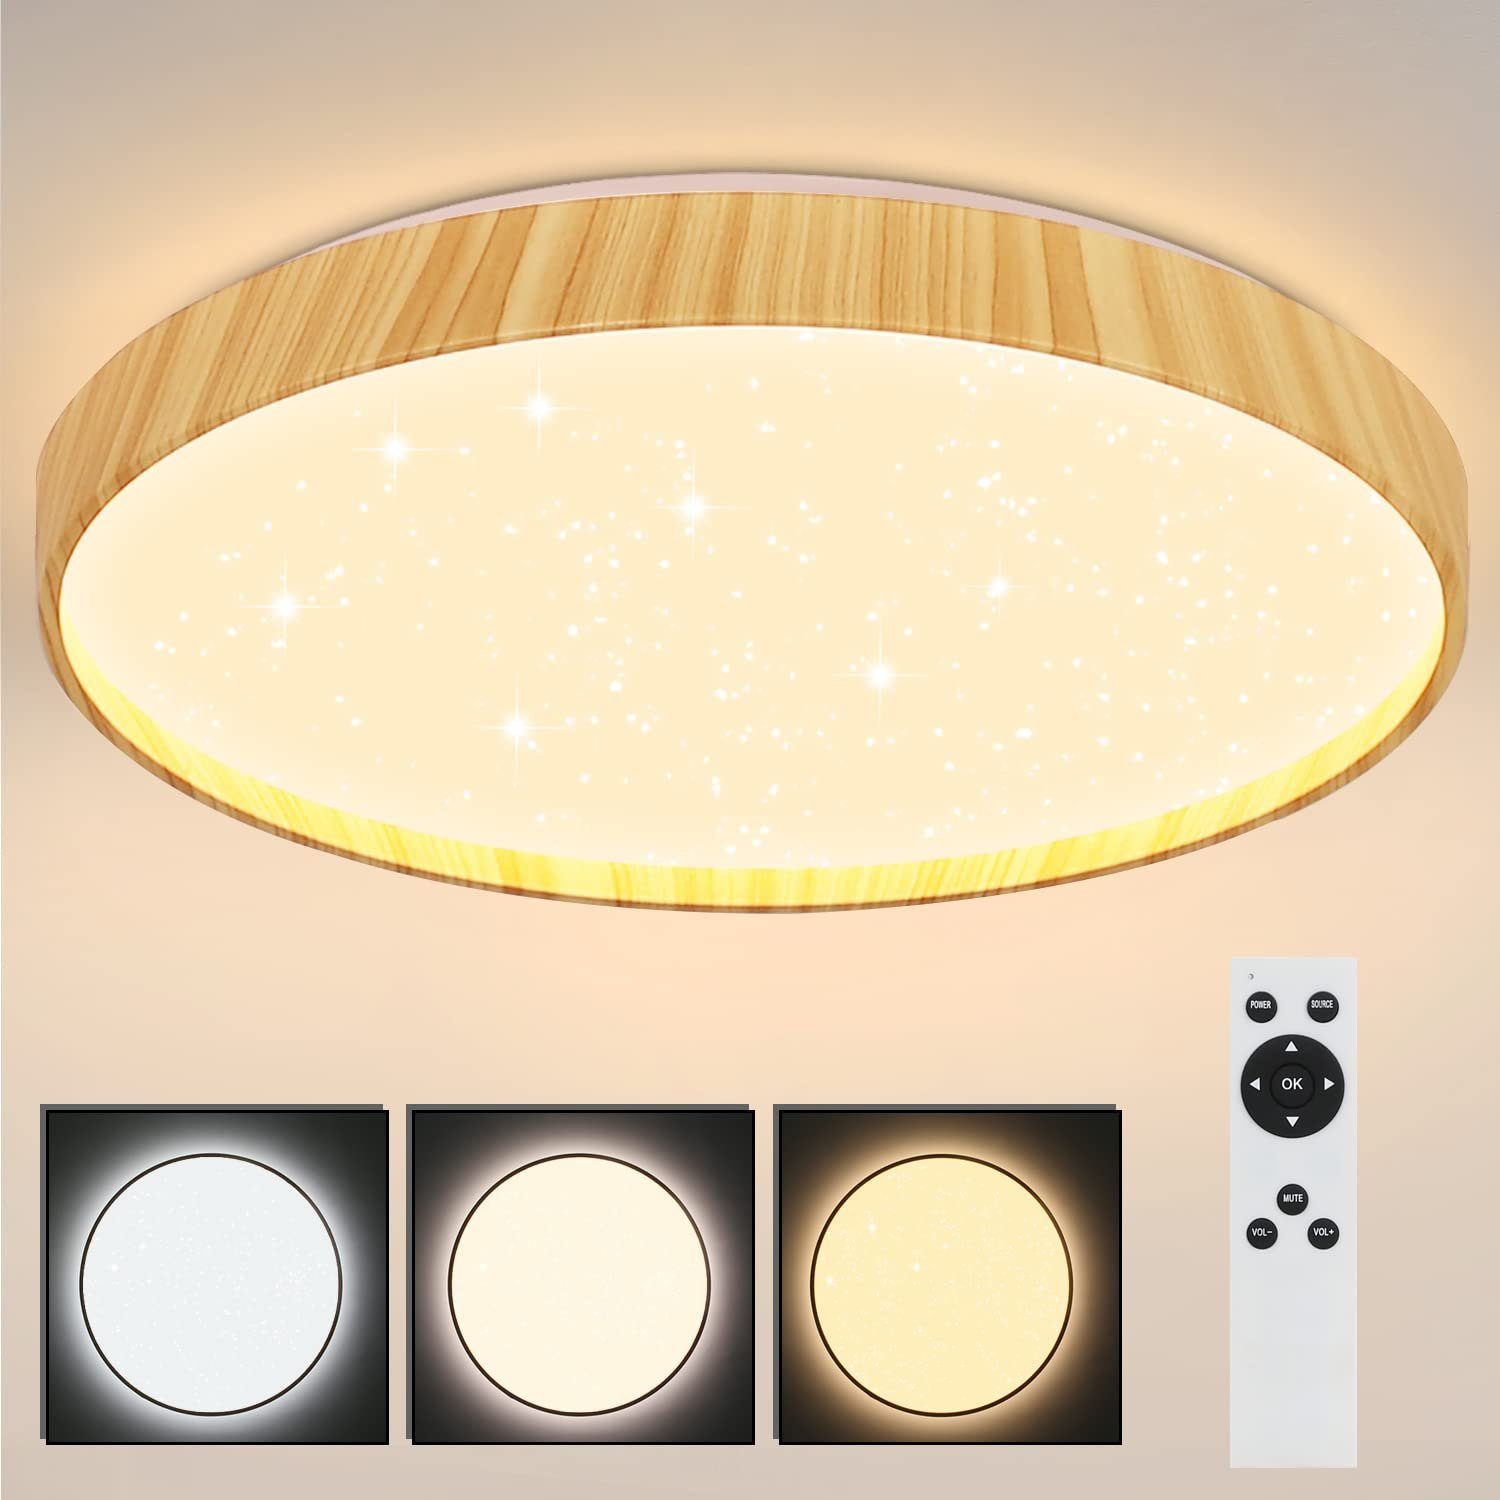 Nettlife LED Deckenleuchte Holz Deckenlampe Dimmbar mit Fernbedienung, LED fest integriert, Warmweiß, Neutralweiß, Kaltweiß, Schlafzimmer Wohnzimmer Badezimmer Arbeitszimmer